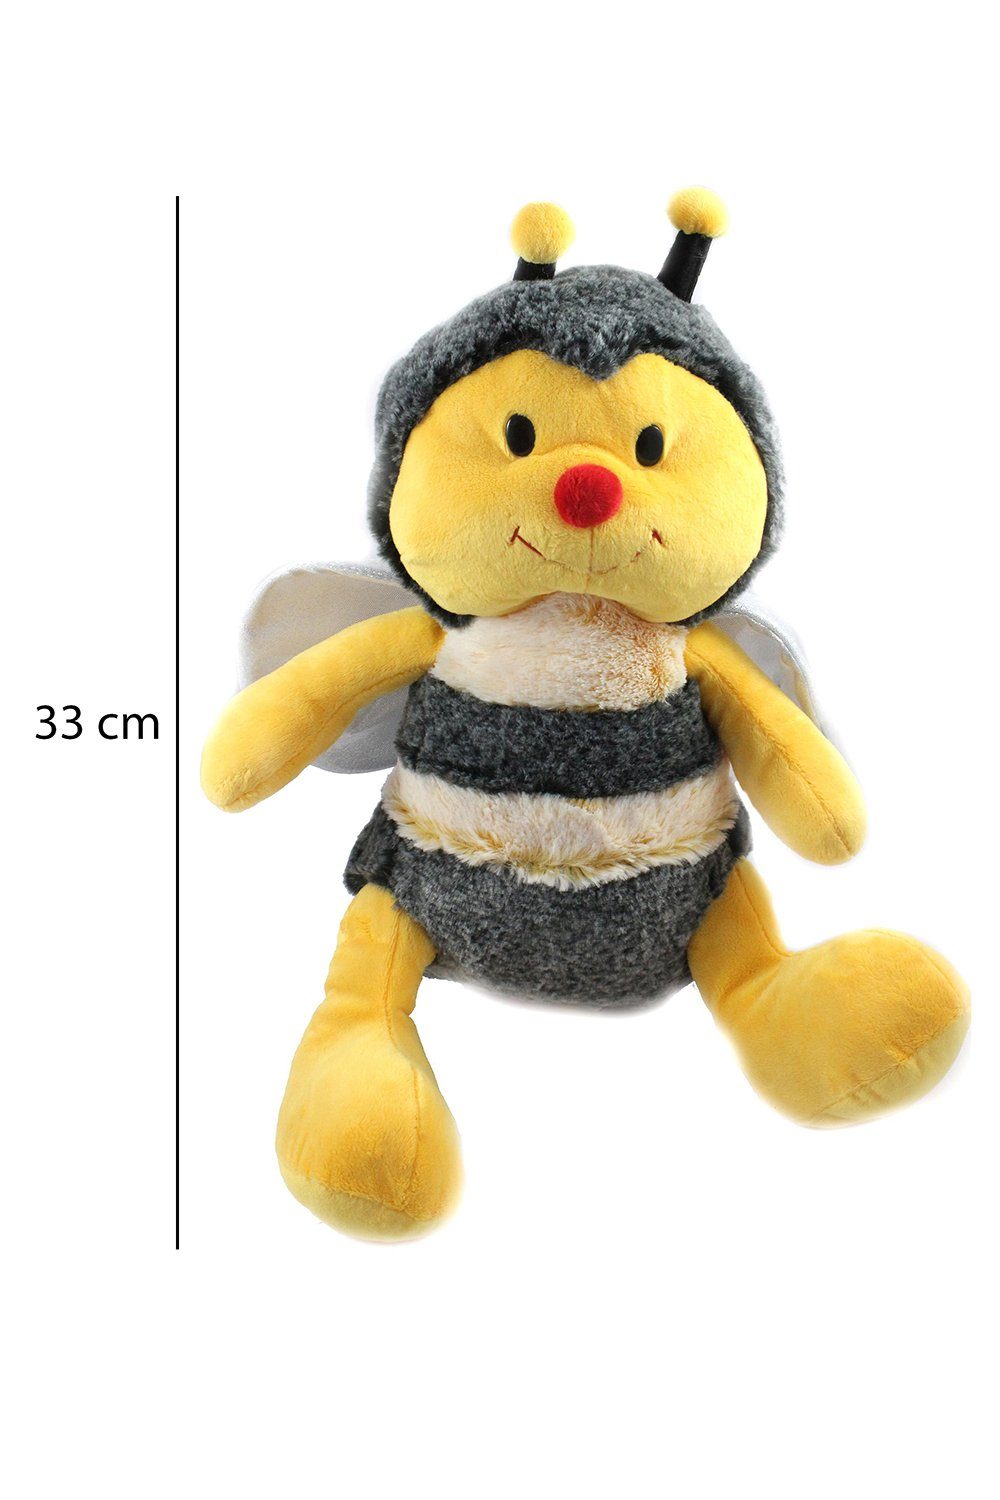 ELLUG Kuscheltier Plüschtier Kuscheltier Stofftier Plüsch Biene, Hummel, Glitzer Flügel Kuscheltier, gelb schwarz, 33 cm